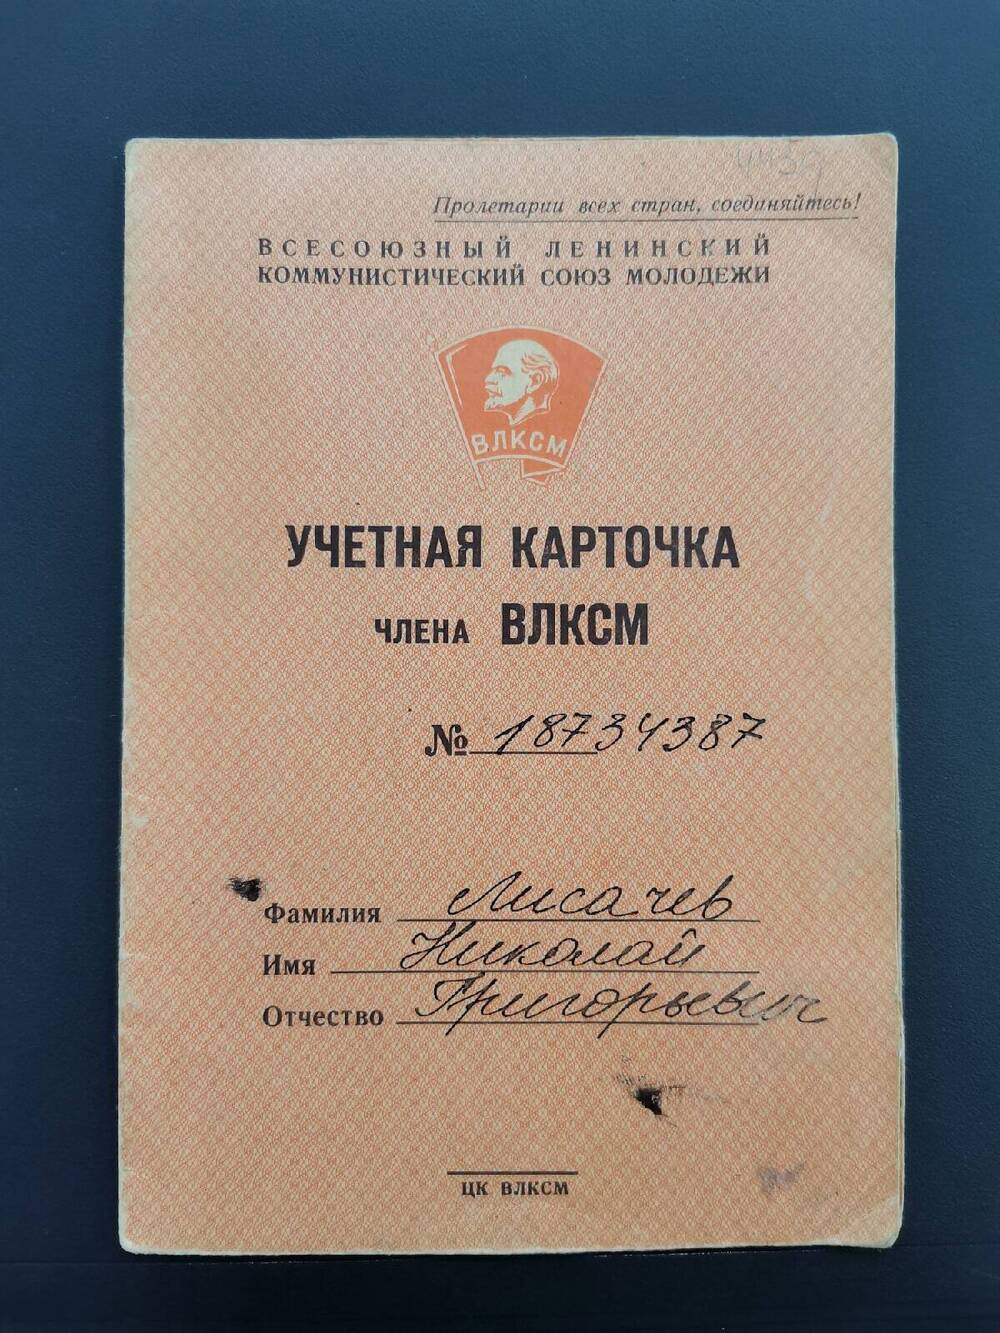 Карточка учетная № 18734387 члена ВЛКСМ Лисачёва Николая Григорьевича.